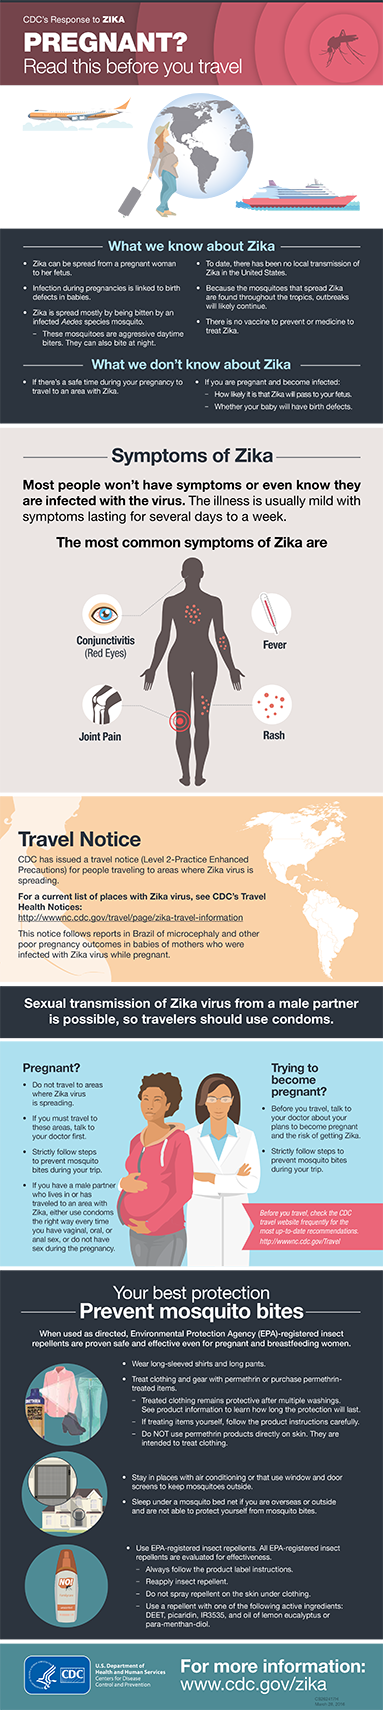 Image of Zika virus / pregnancy info-graphic.